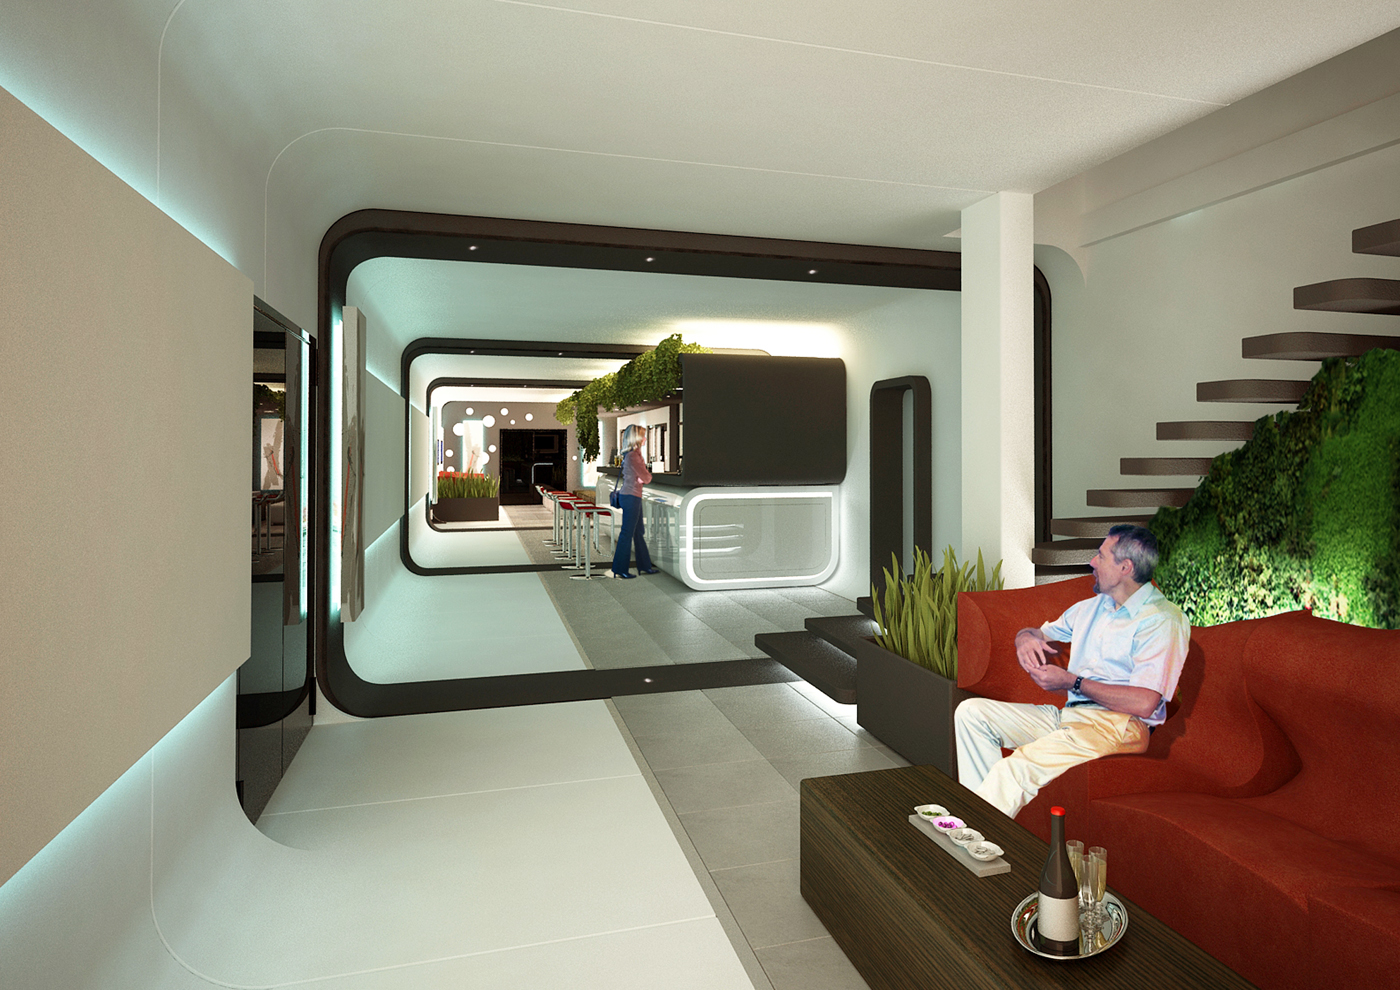 Maggiora automobili - interior design - Industry reassessment - Coffee bar2 - Davide Mezzasalma - Furniture design - Berlin